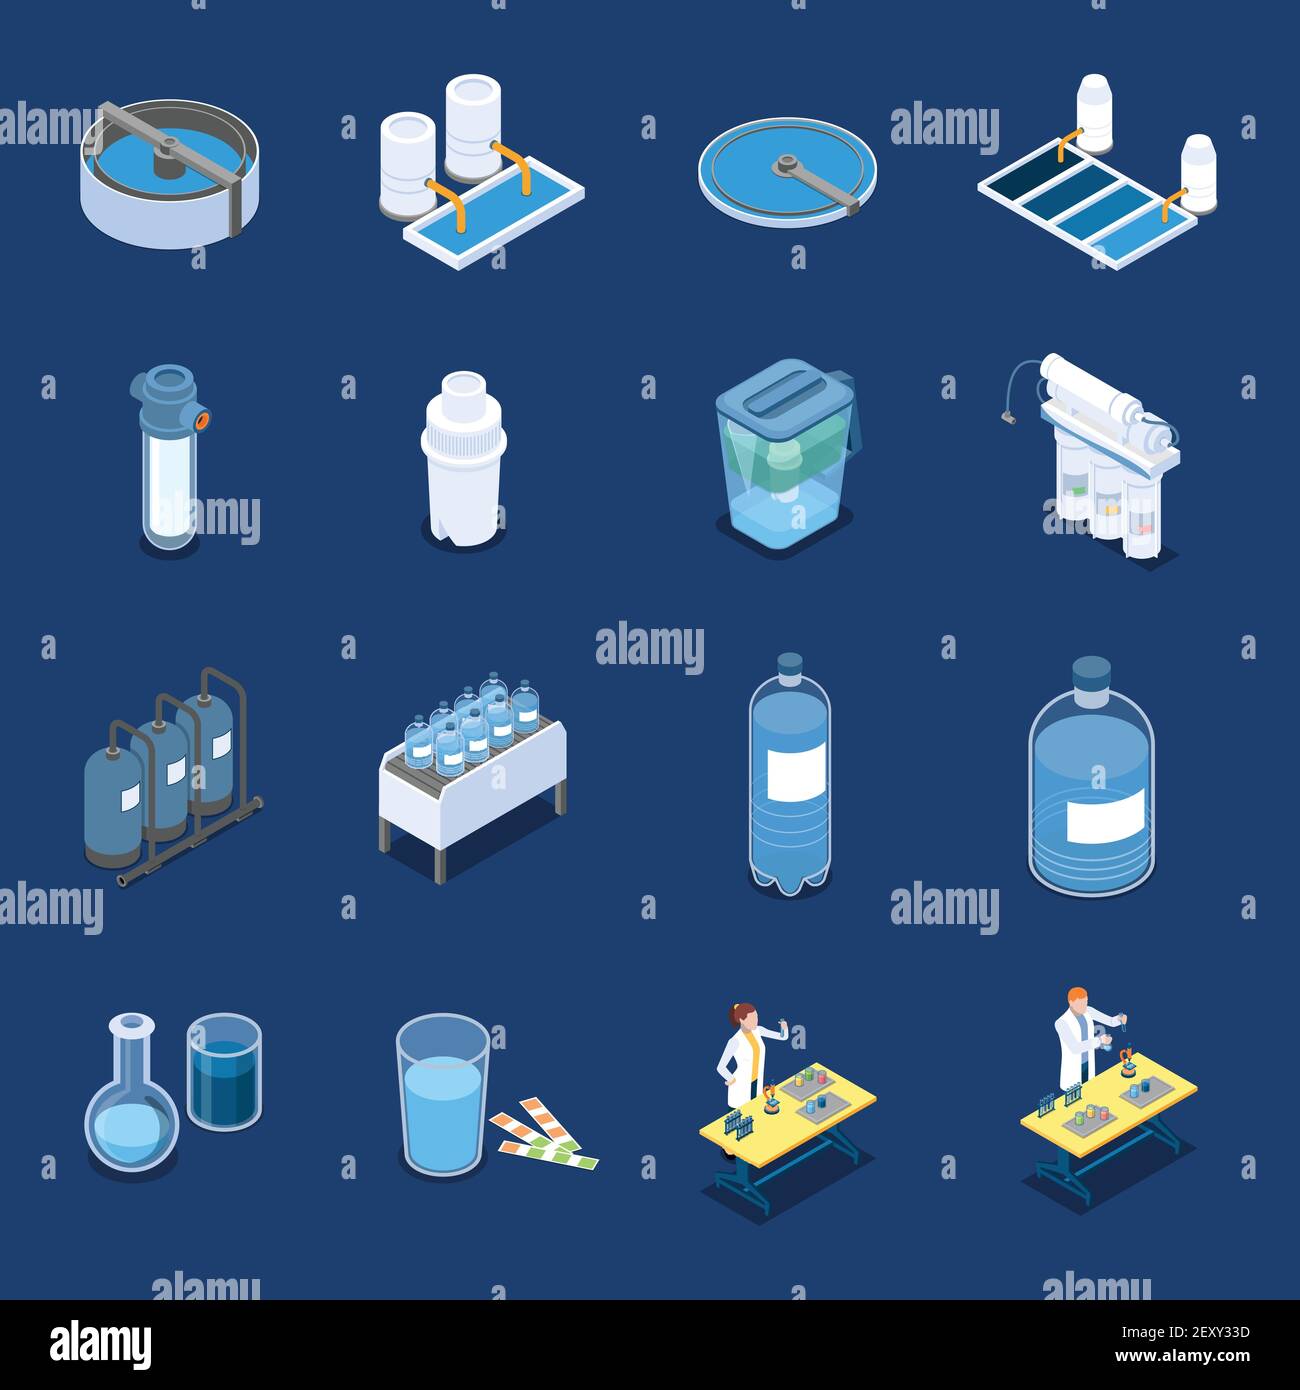 Trinkwasser reinigung Stock-Vektorgrafiken kaufen - Alamy